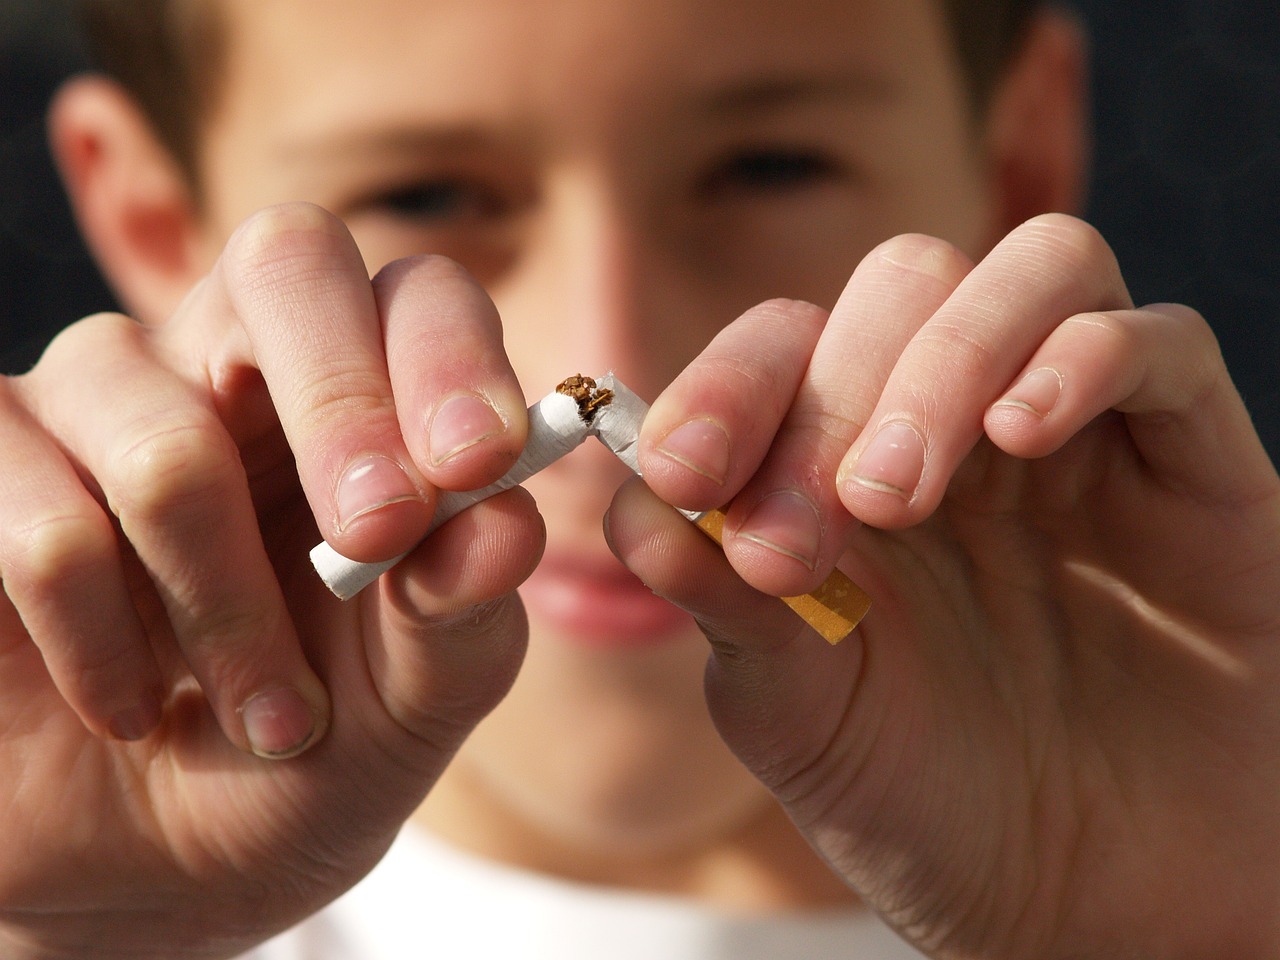 Adolescent's tobacco use